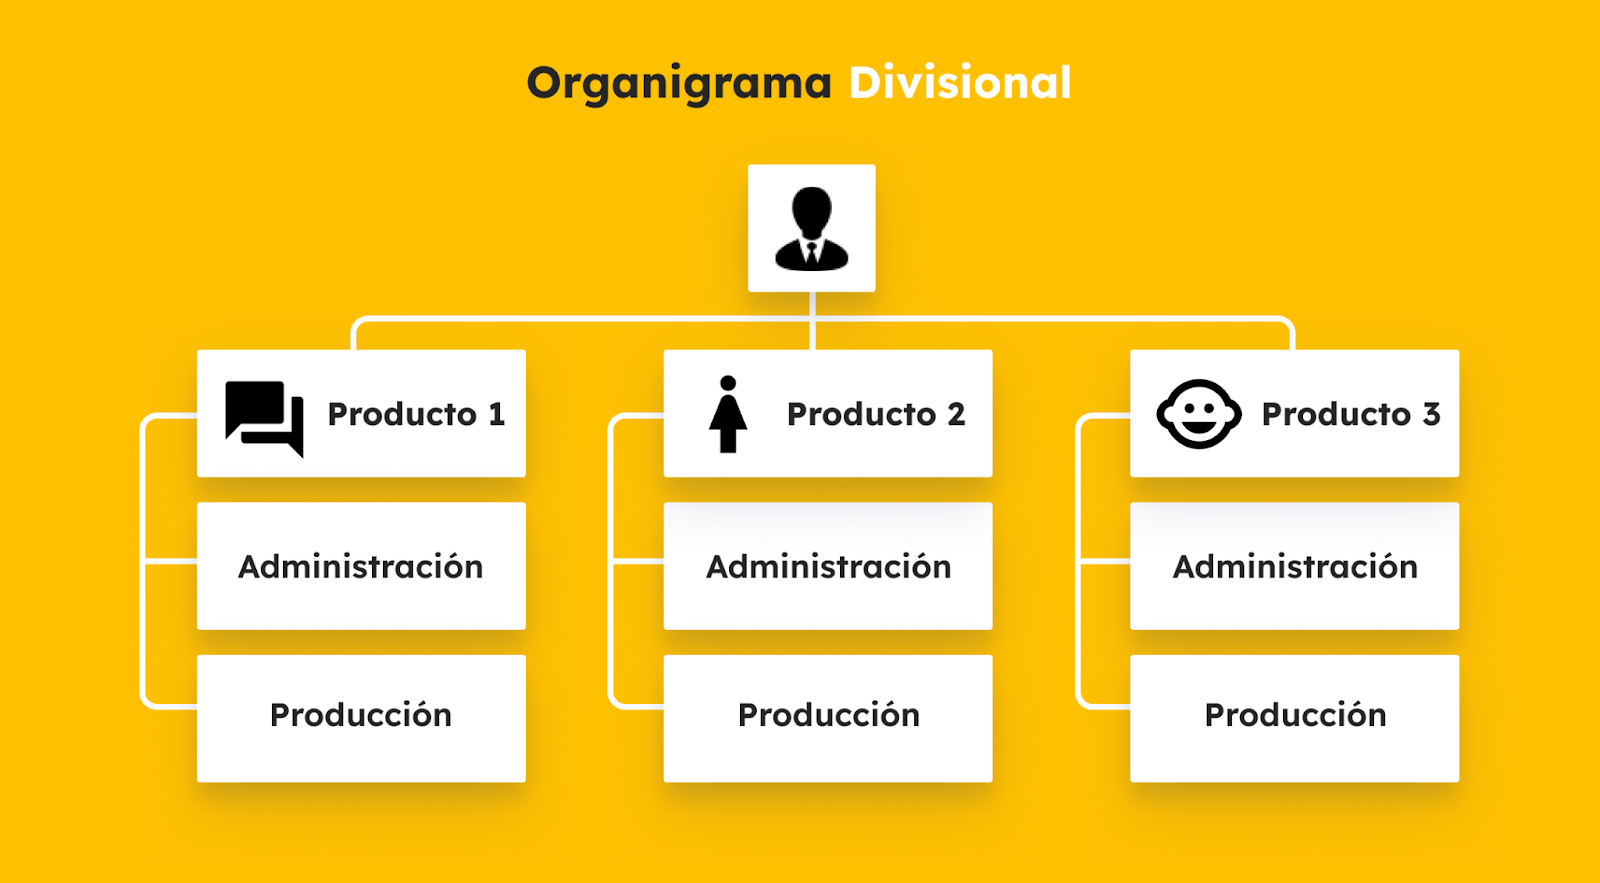 Organigrama Divisional